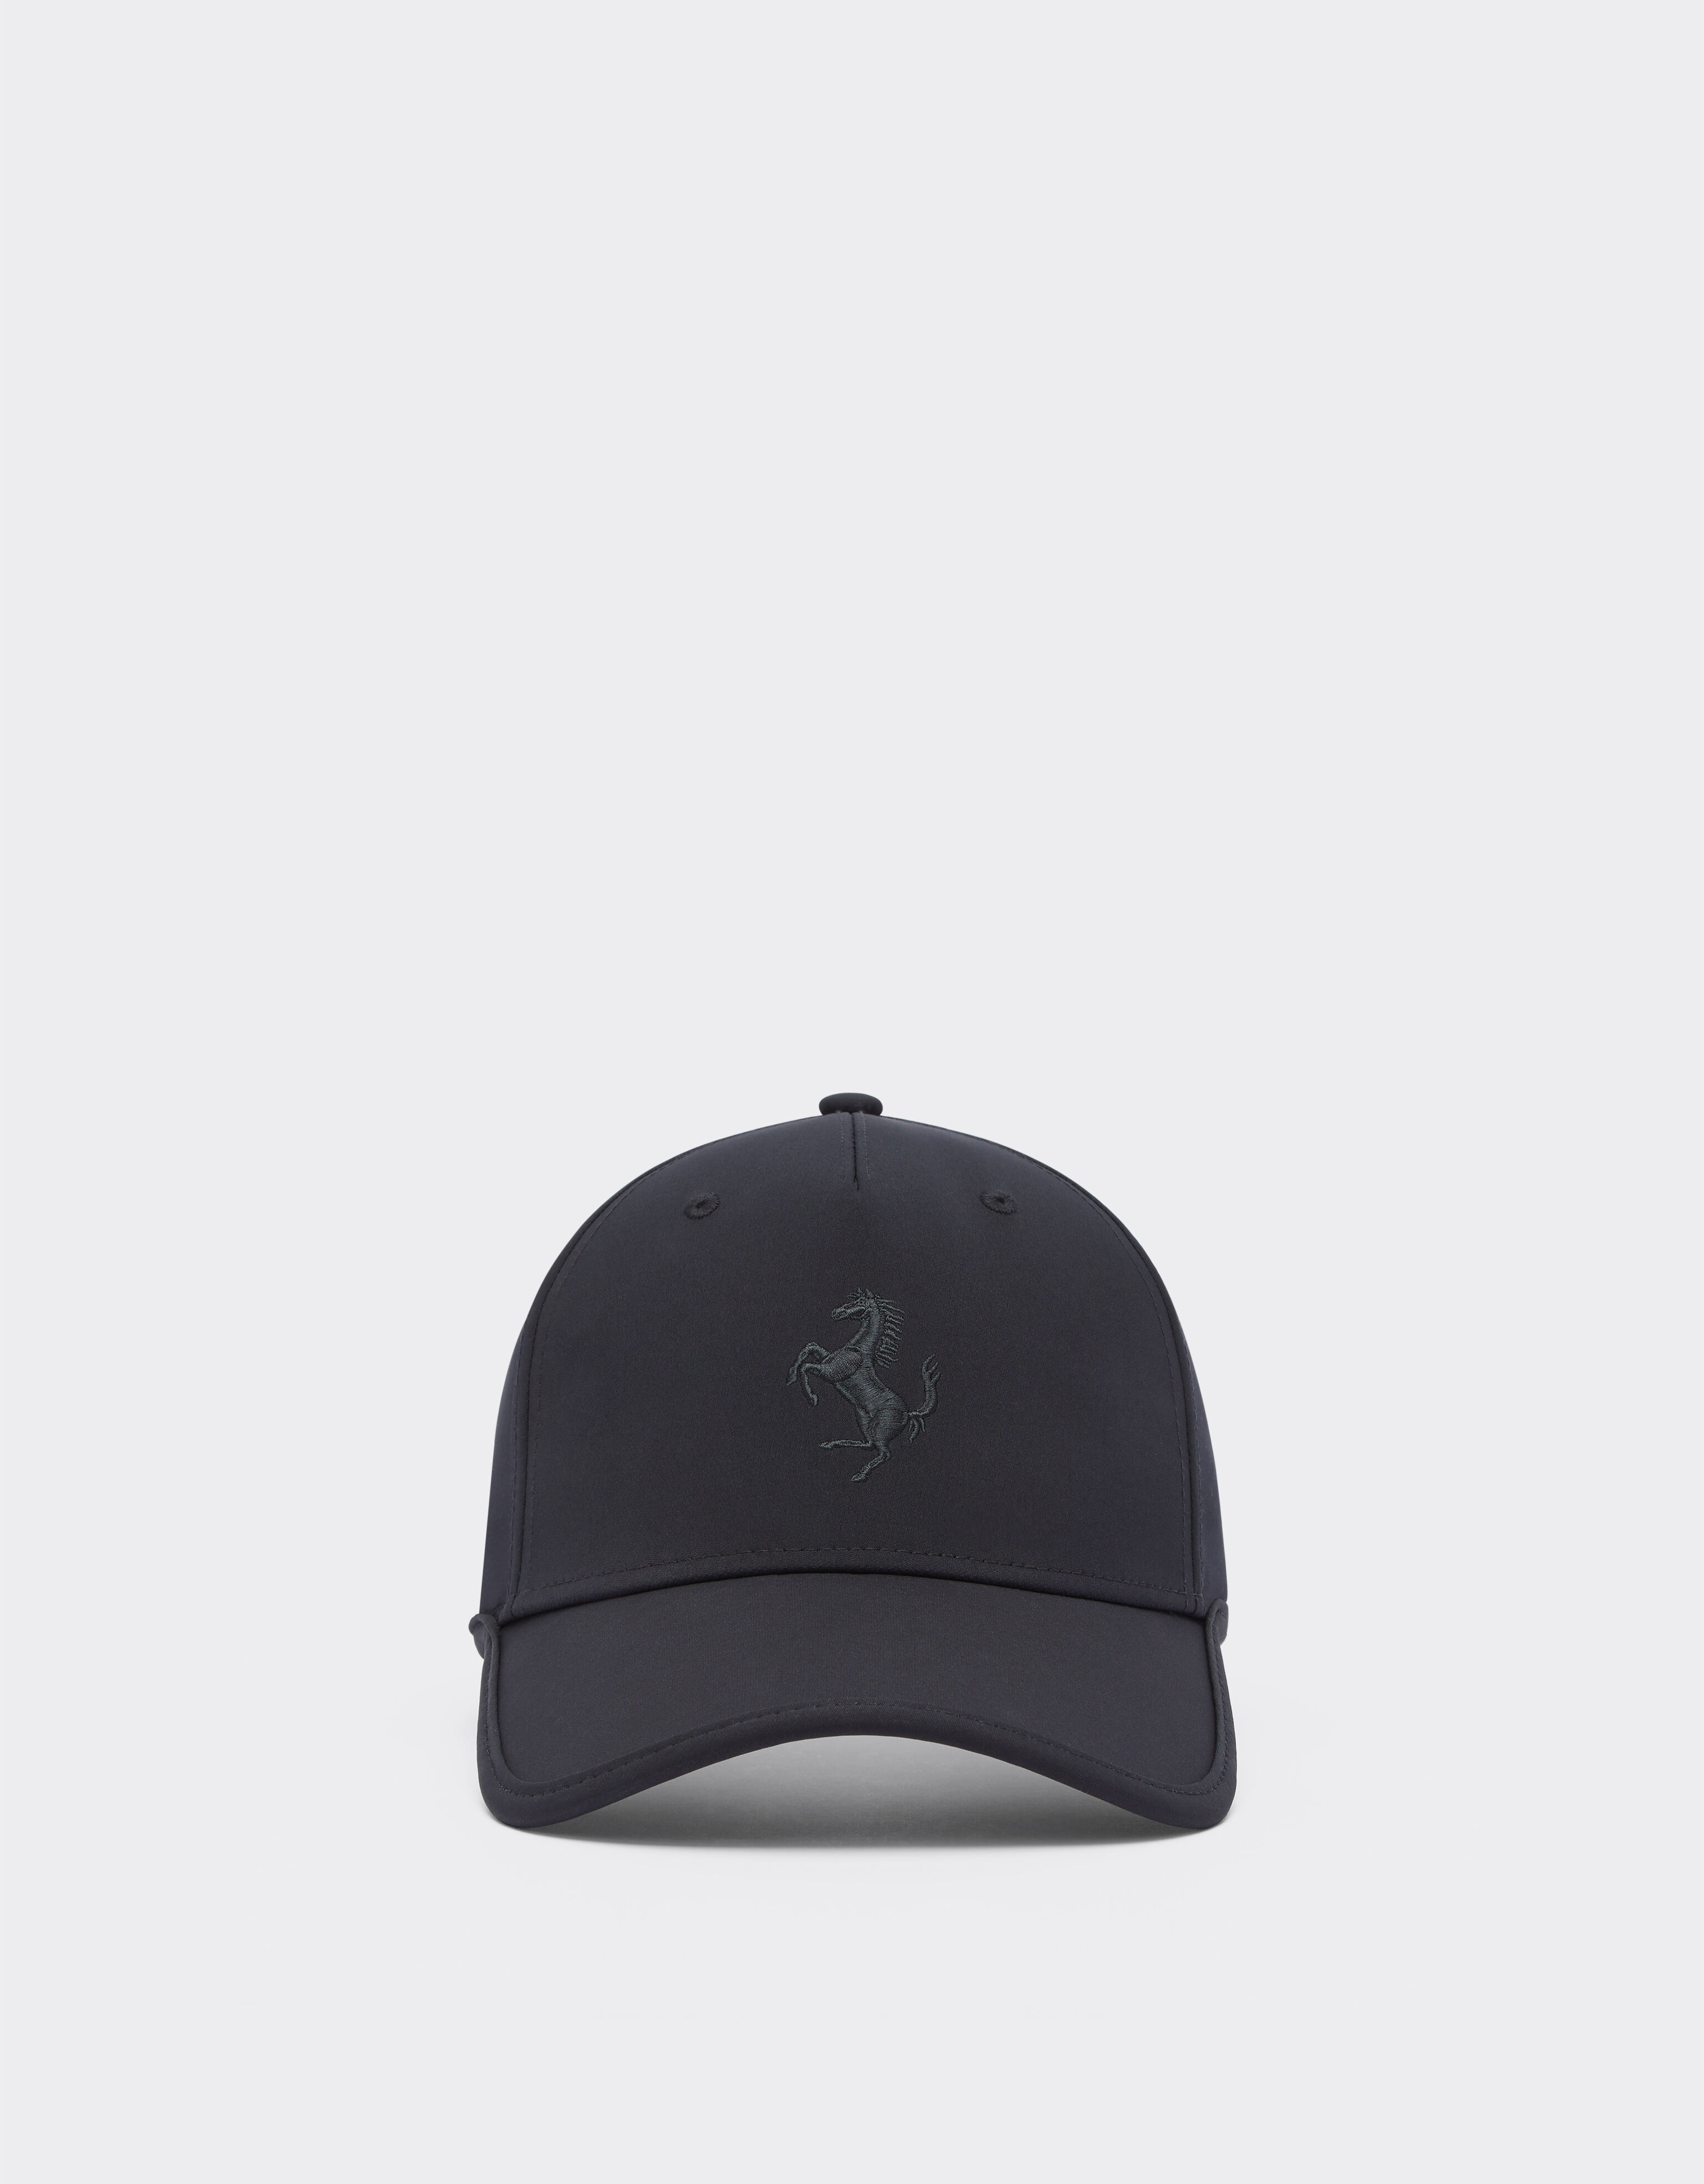 Ferrari Junior baseball hat with Prancing Horse detail Black 47096fK